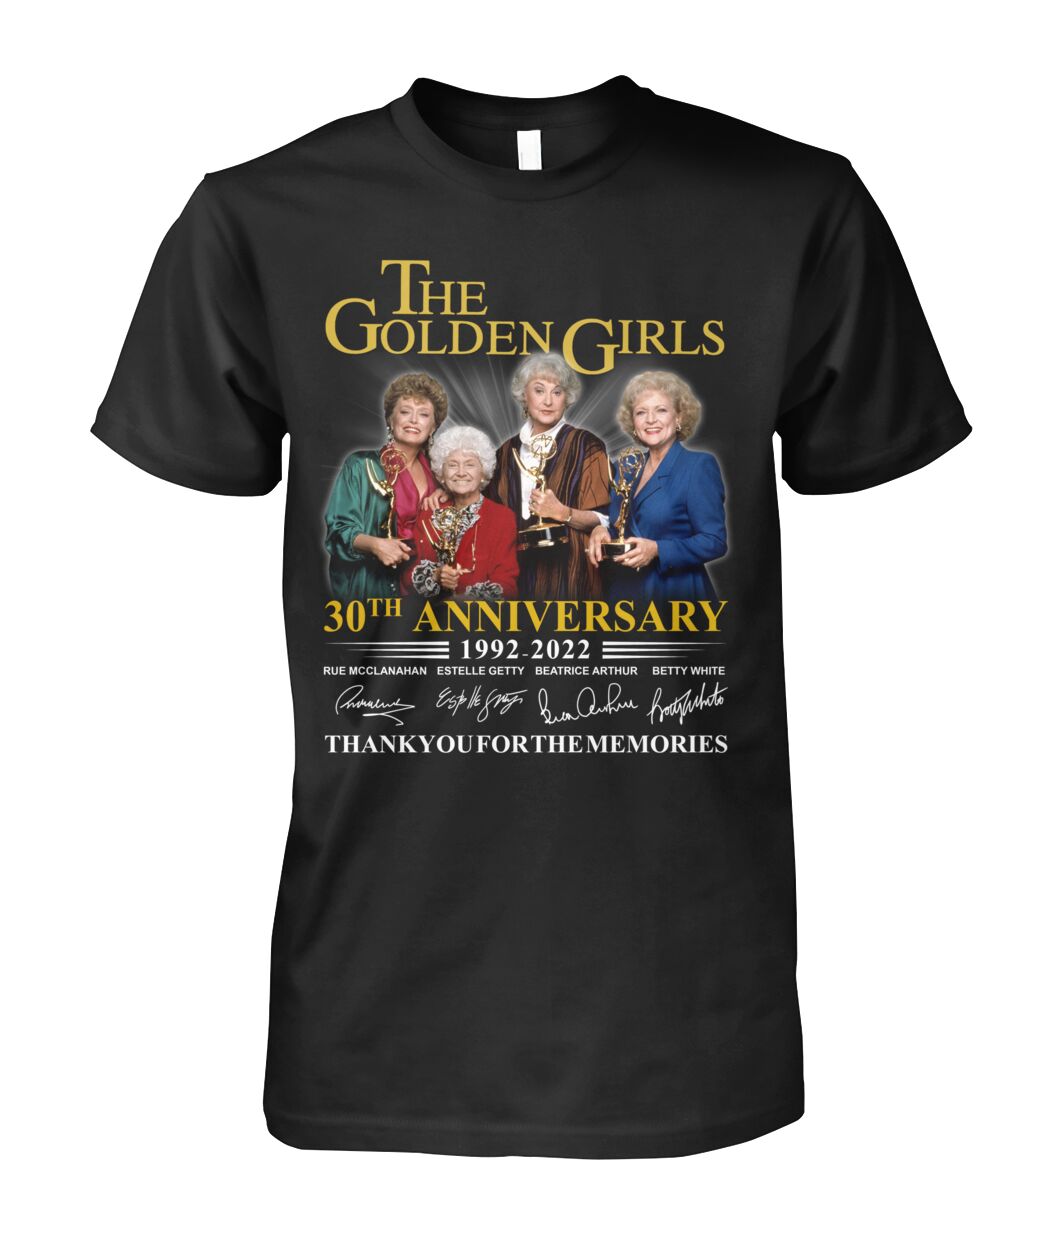 The Golden Girls 30th Anniversary 1992-2022 shirt, hoodie 19